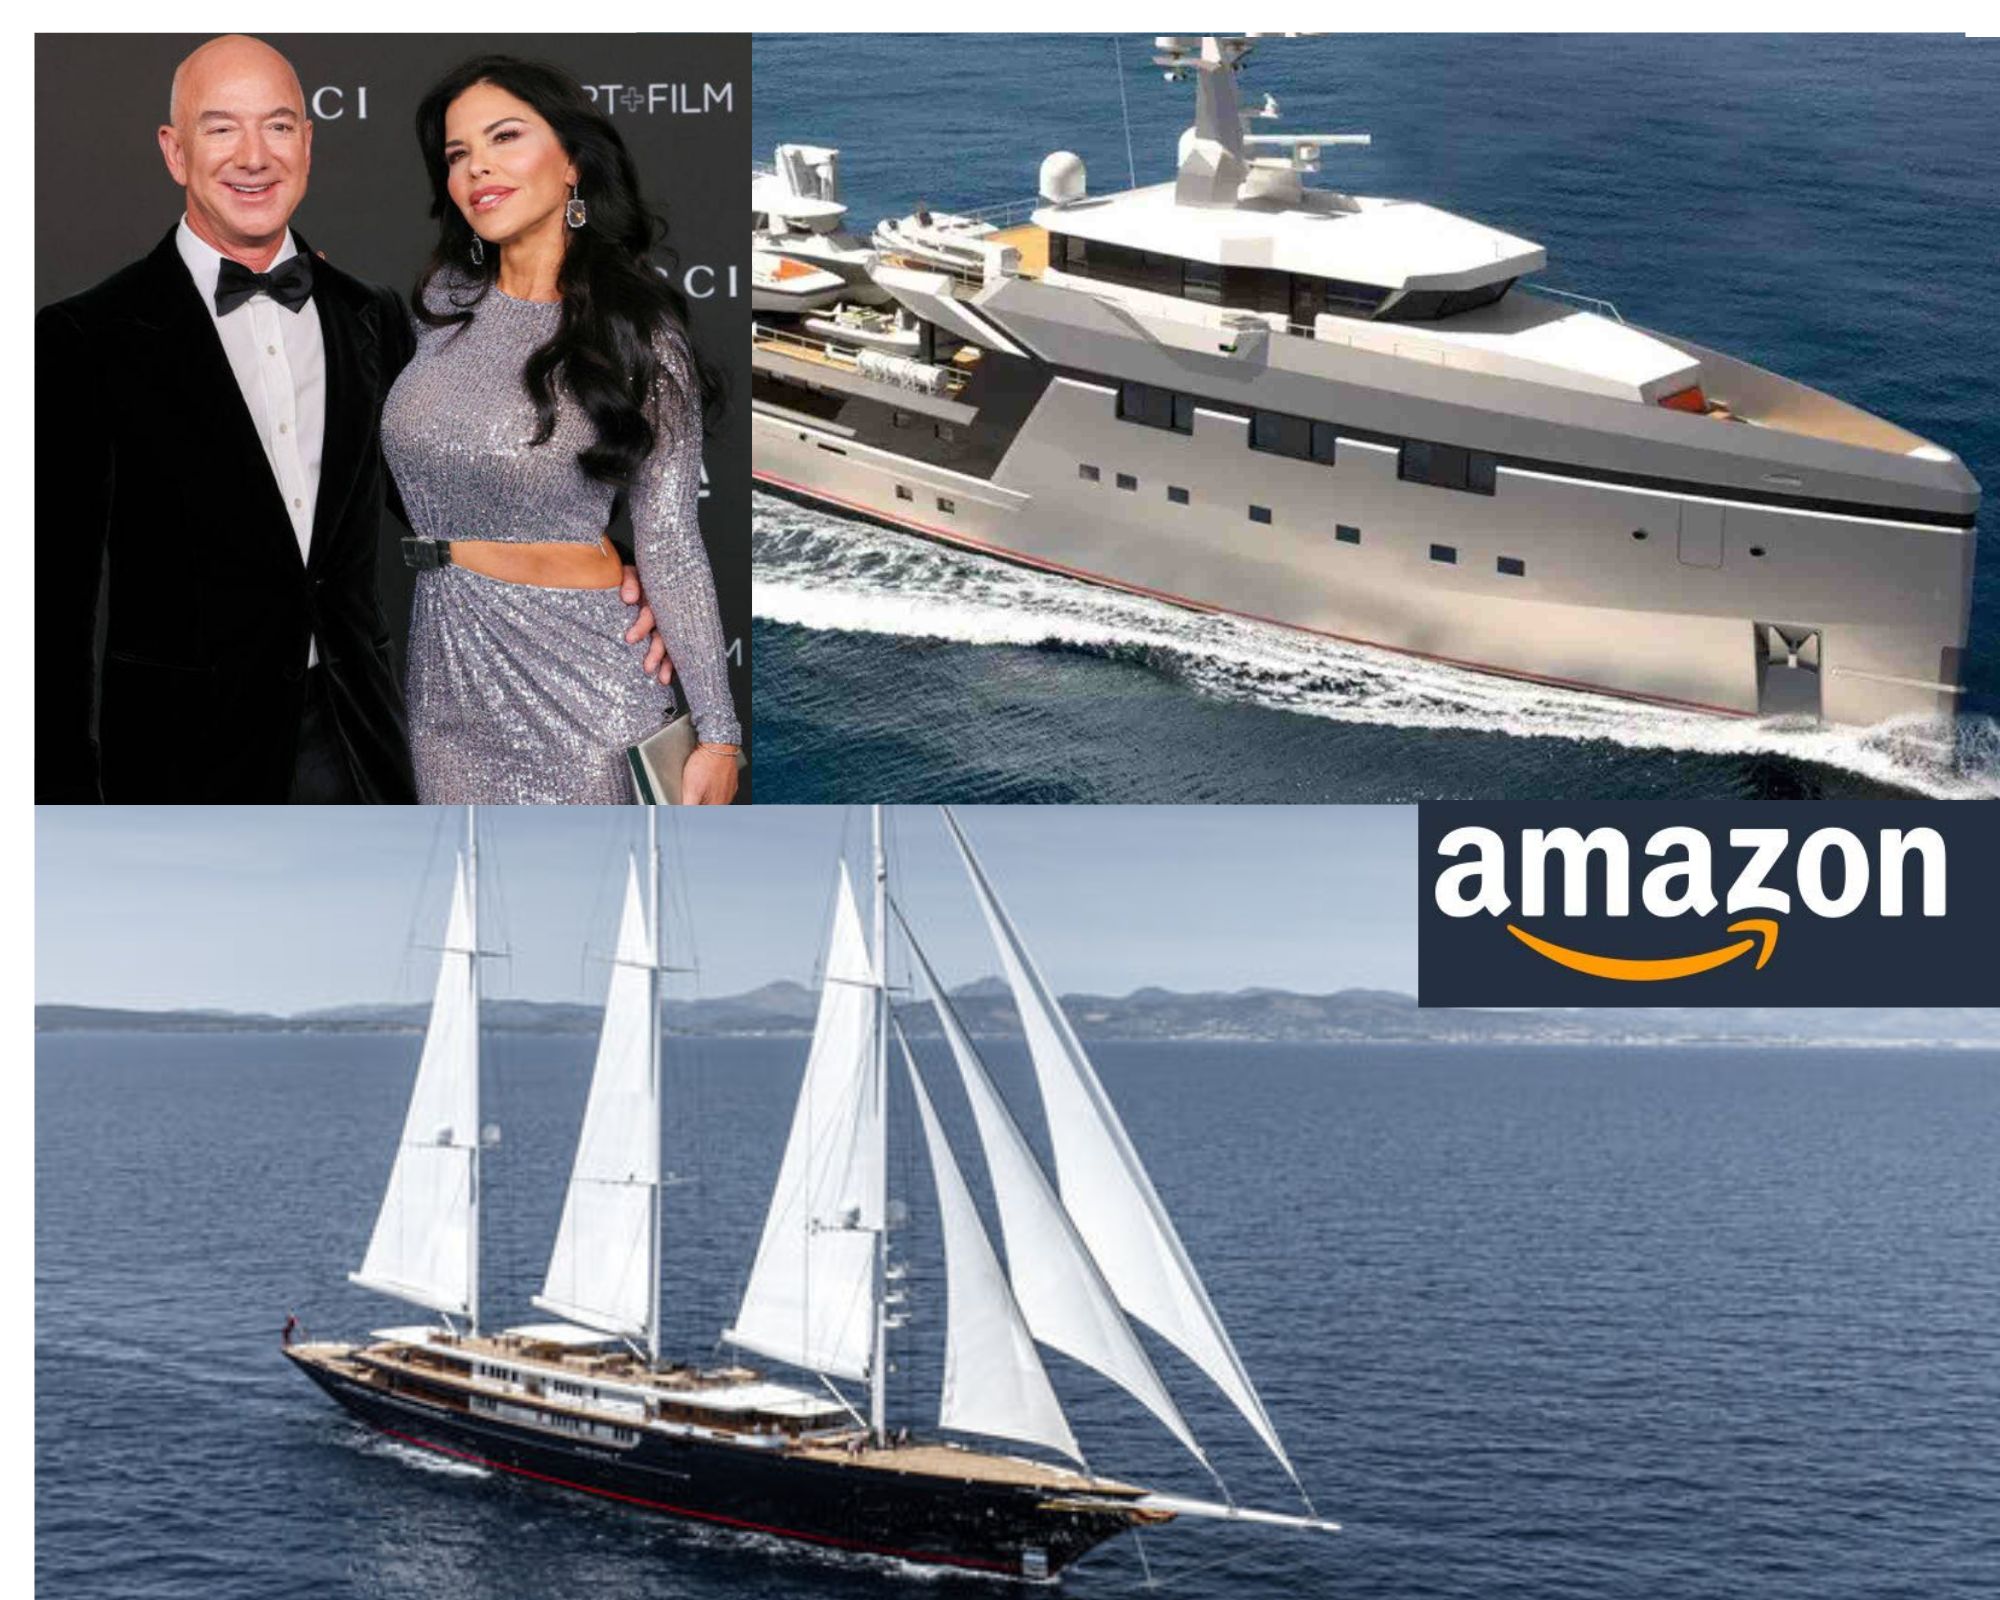 Beeindruckende Yachten von Jeff Bezos auf Mallorca